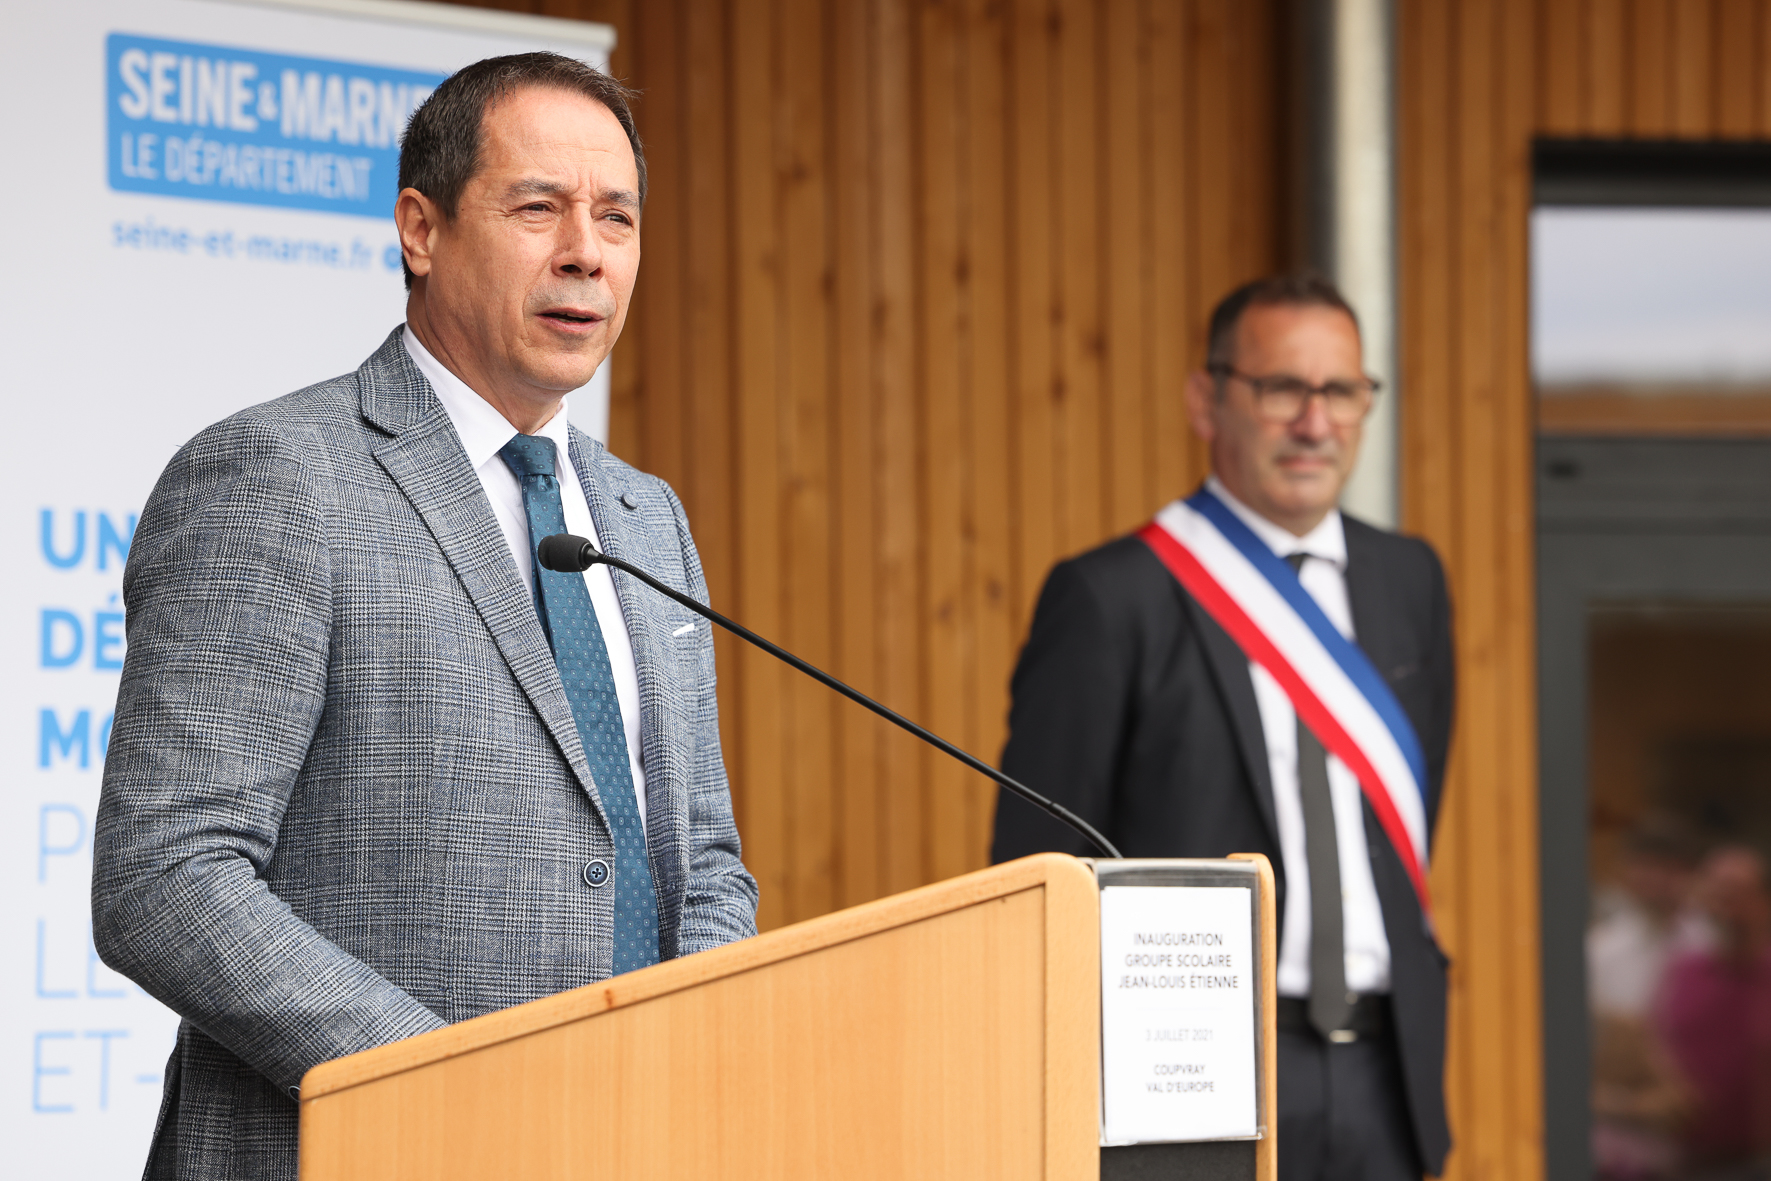 Cérémonie d'inauguration du groupe scolaire Jean-Louis Etienne à Coupvray